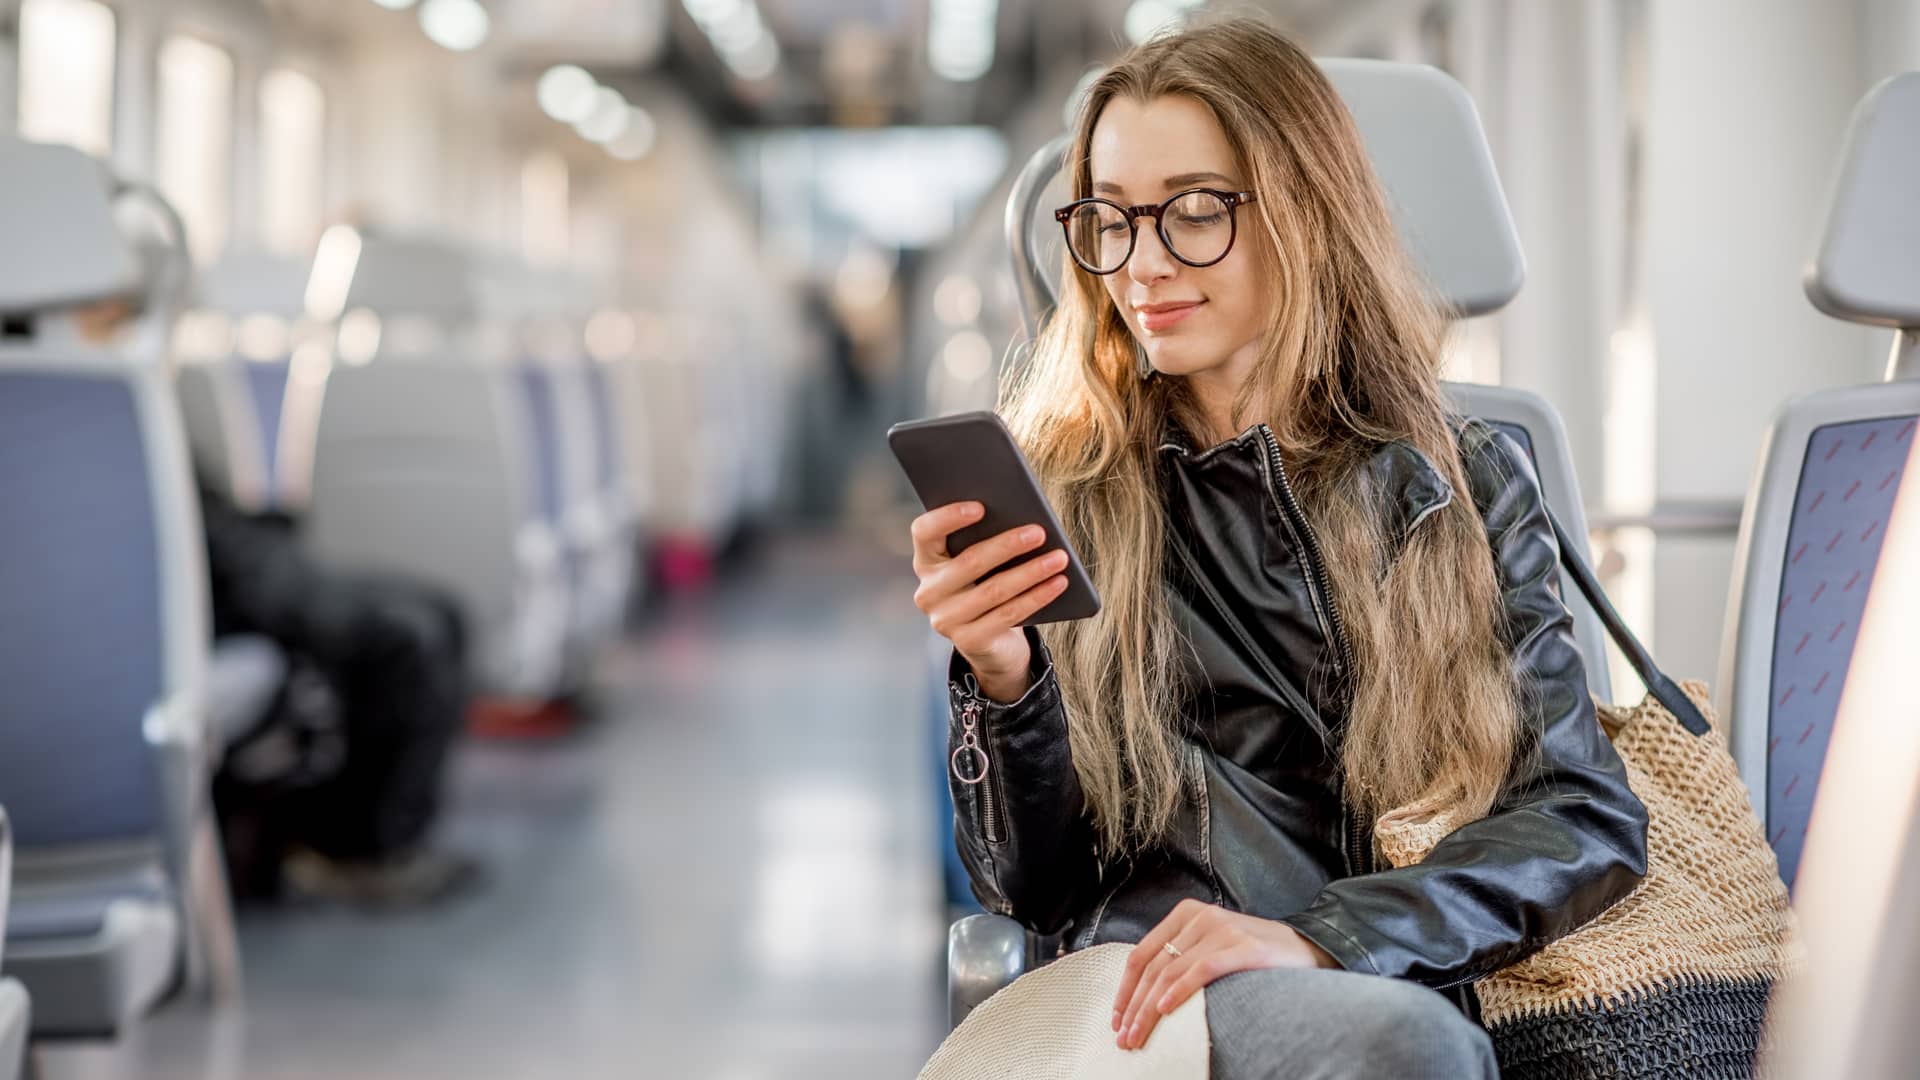 Mujer hermosa con gafas chequea su celular en un tren mientras comprueba su coste de roaming al salir del país